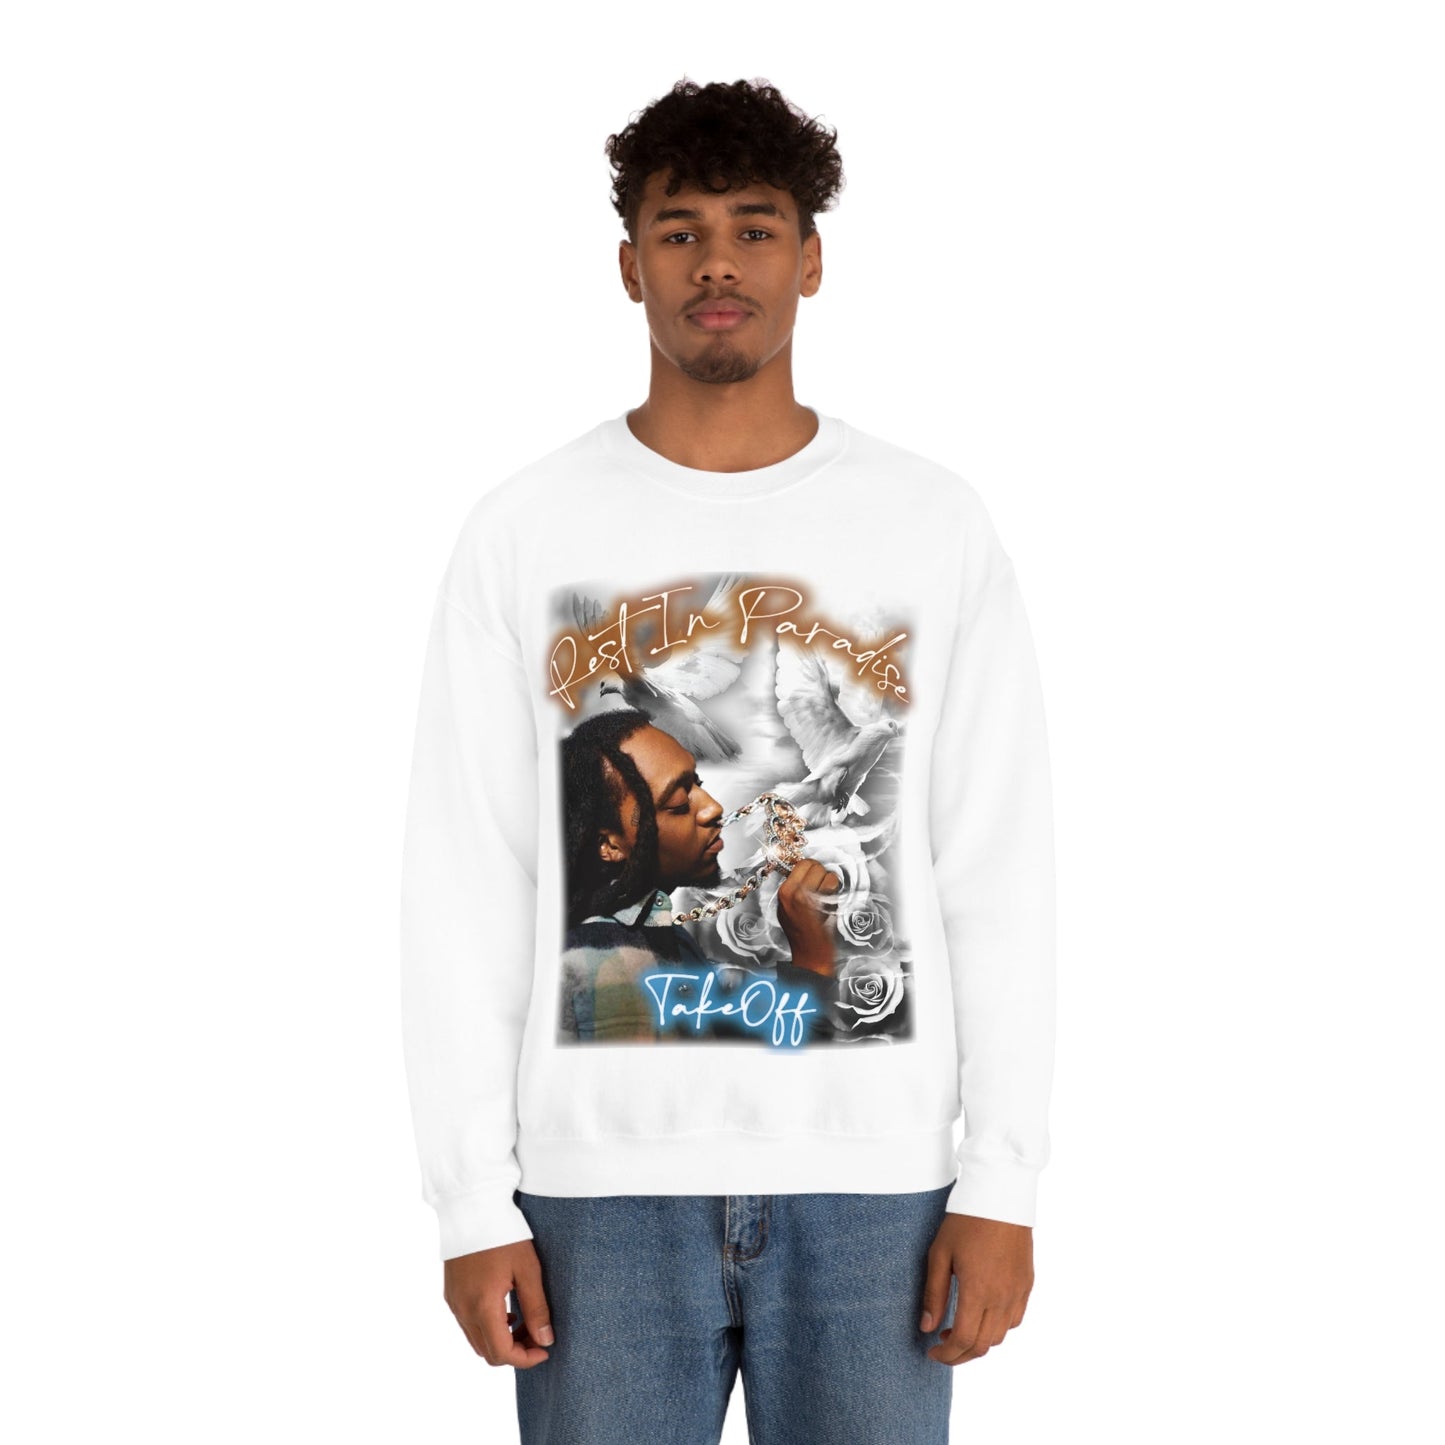 TakeOff Vintage Sweatshirt - In Memory Of